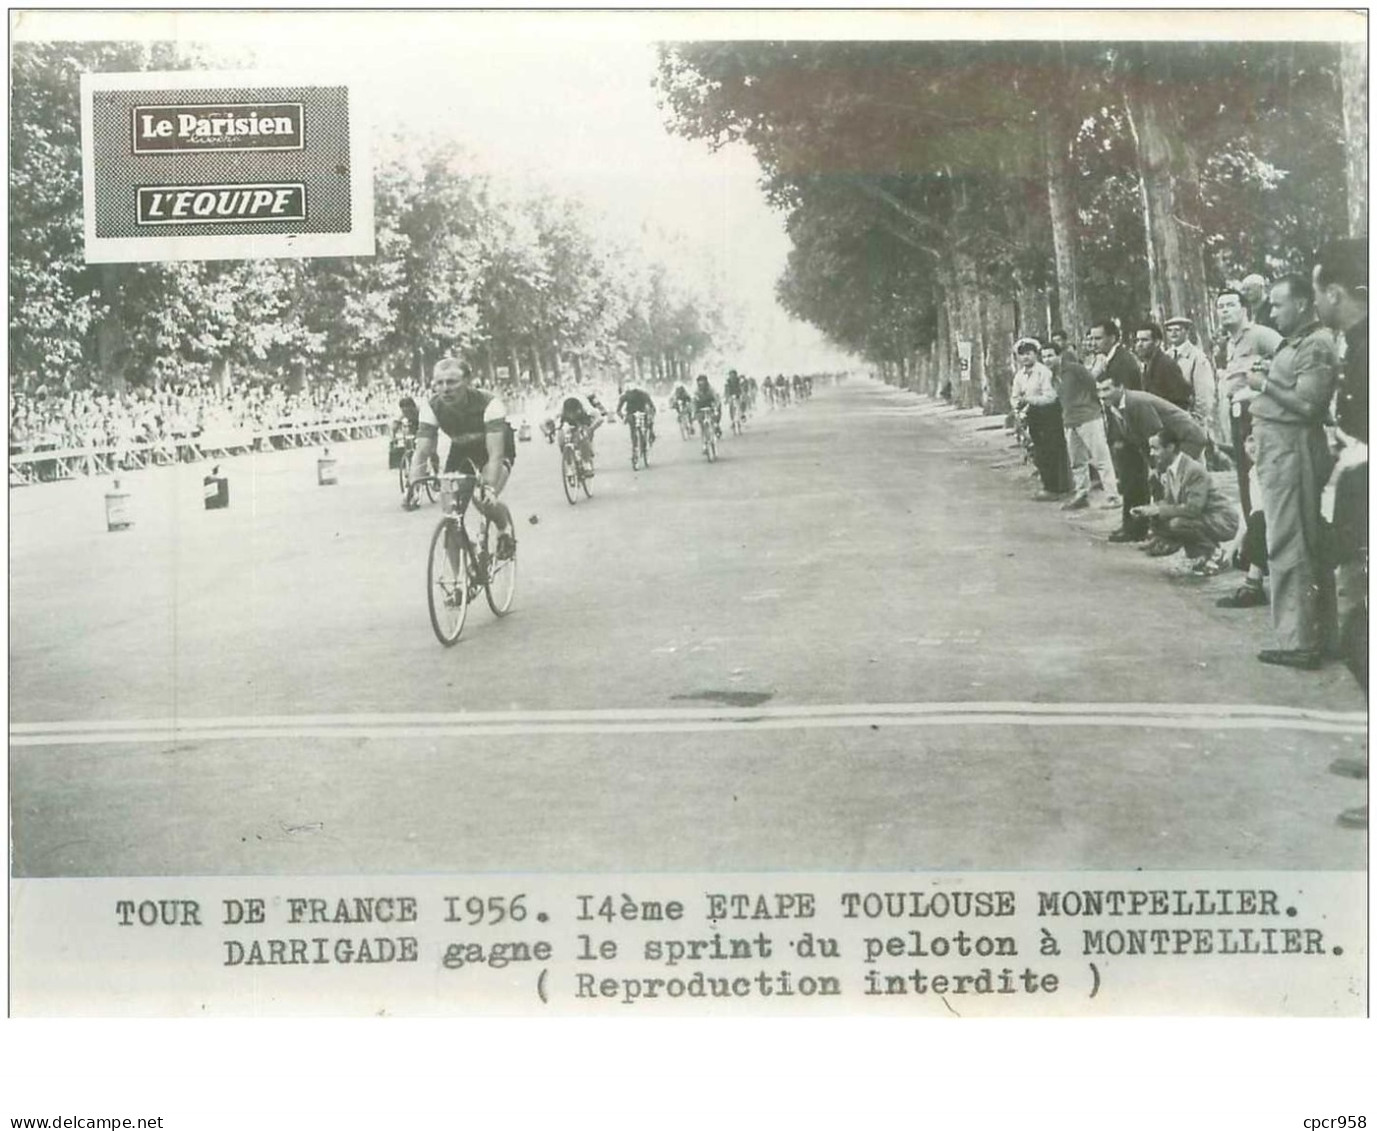 PHOTO DE PRESSE ORIGINALE TOUR DE FRANCE 1956.20X15.14eme ETAPE TOULOUSE MONTPELLIER.DARRIGADE GAGNE LE SPRINT.n°18679 - Cycling